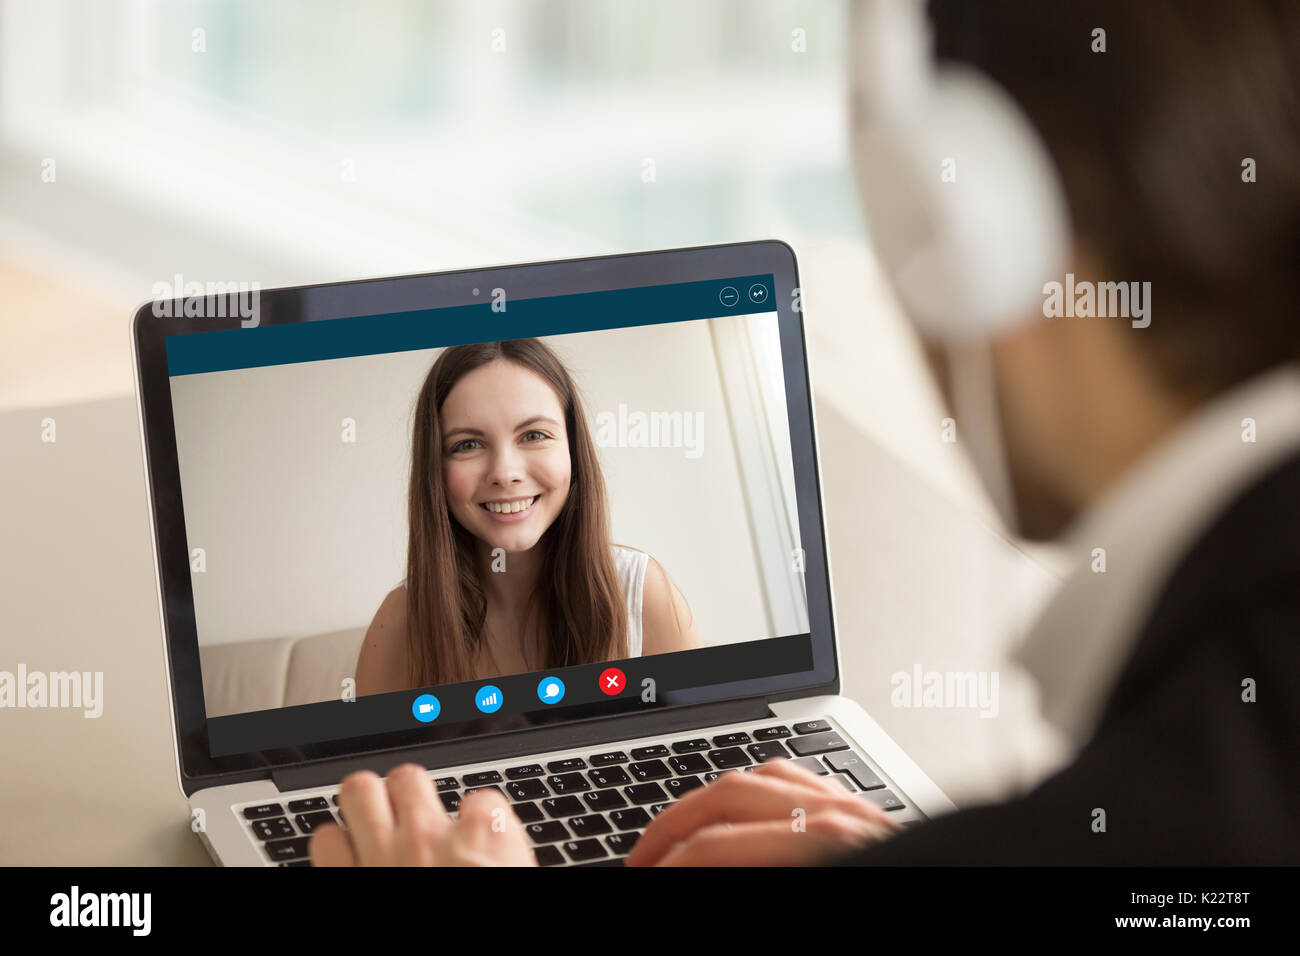 Chica sonriente en la videollamada con Guy, virtual chat en línea Foto de stock